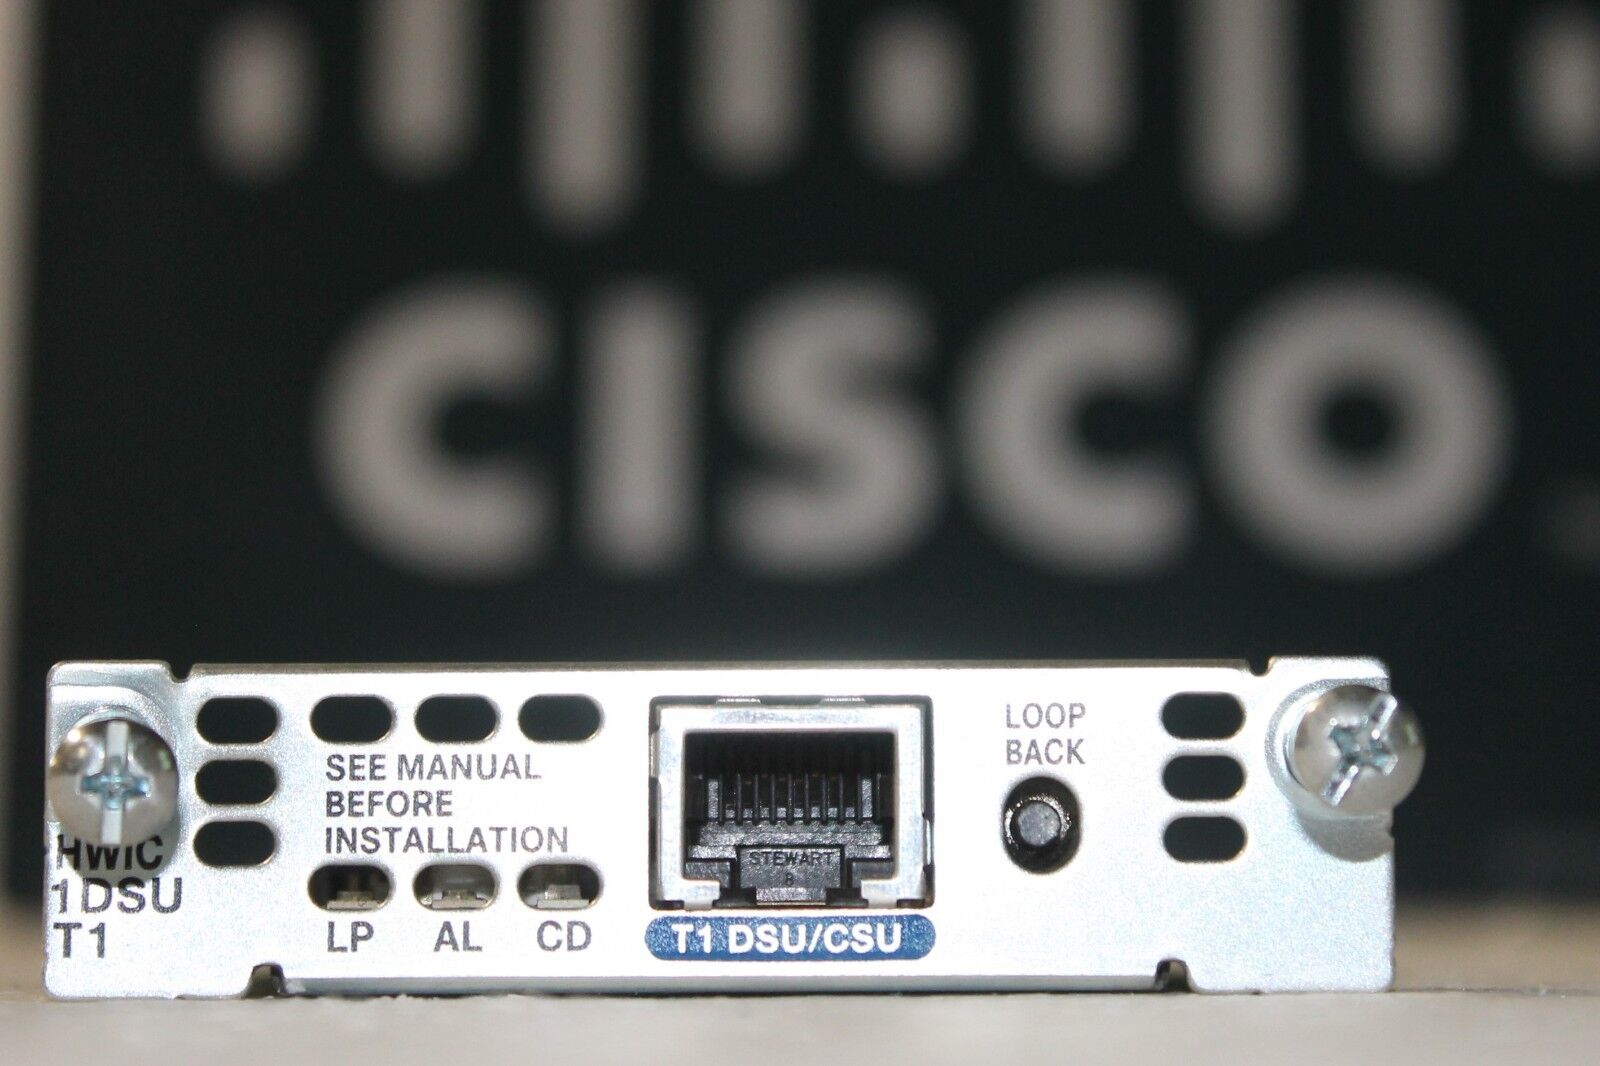 HWIC-1DSU-T1 - Cisco 1-Port T1/Fractional T1 DSU/CSU WAN Interface Card